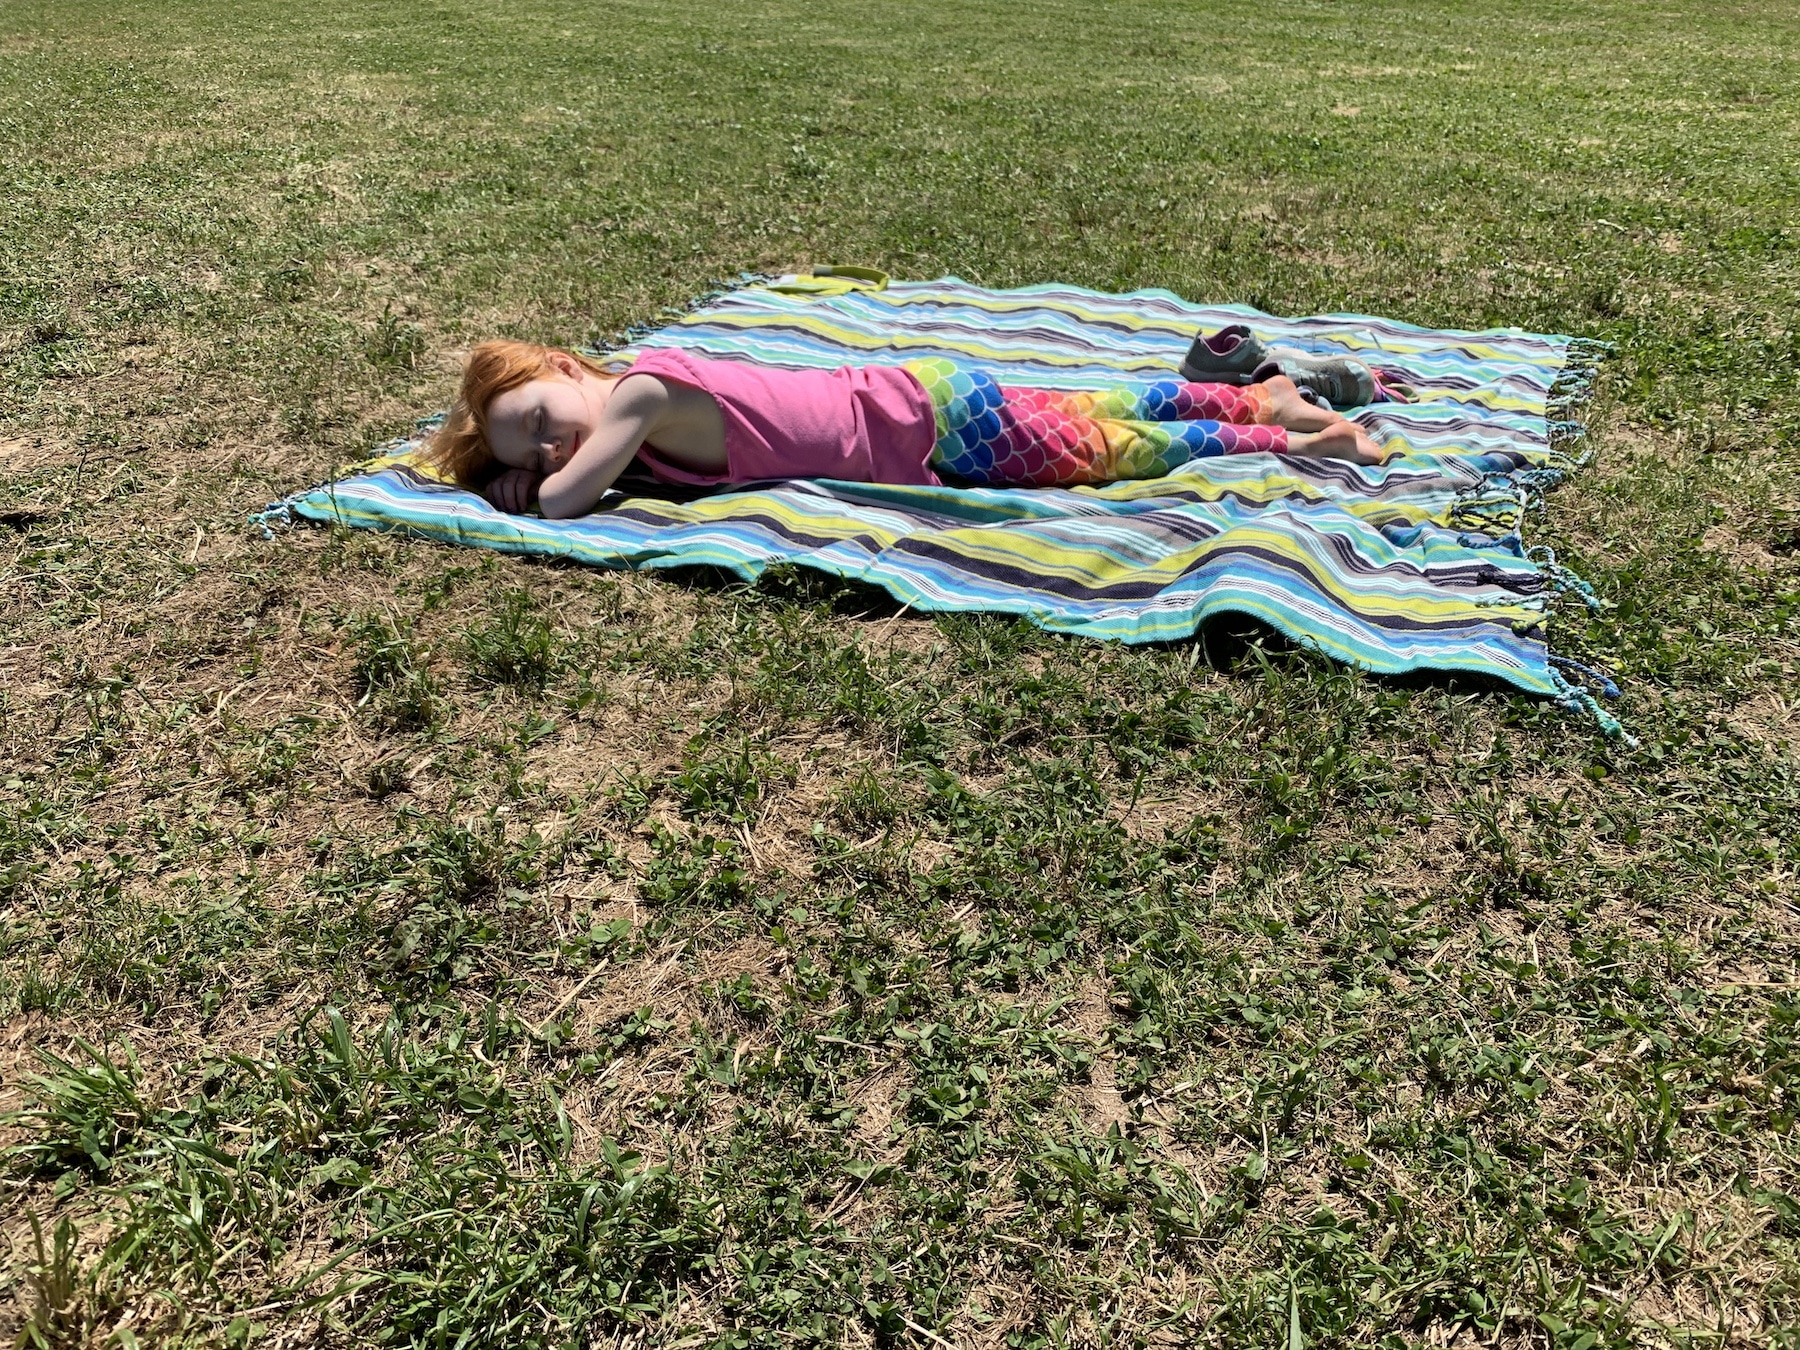 b laying in the sun